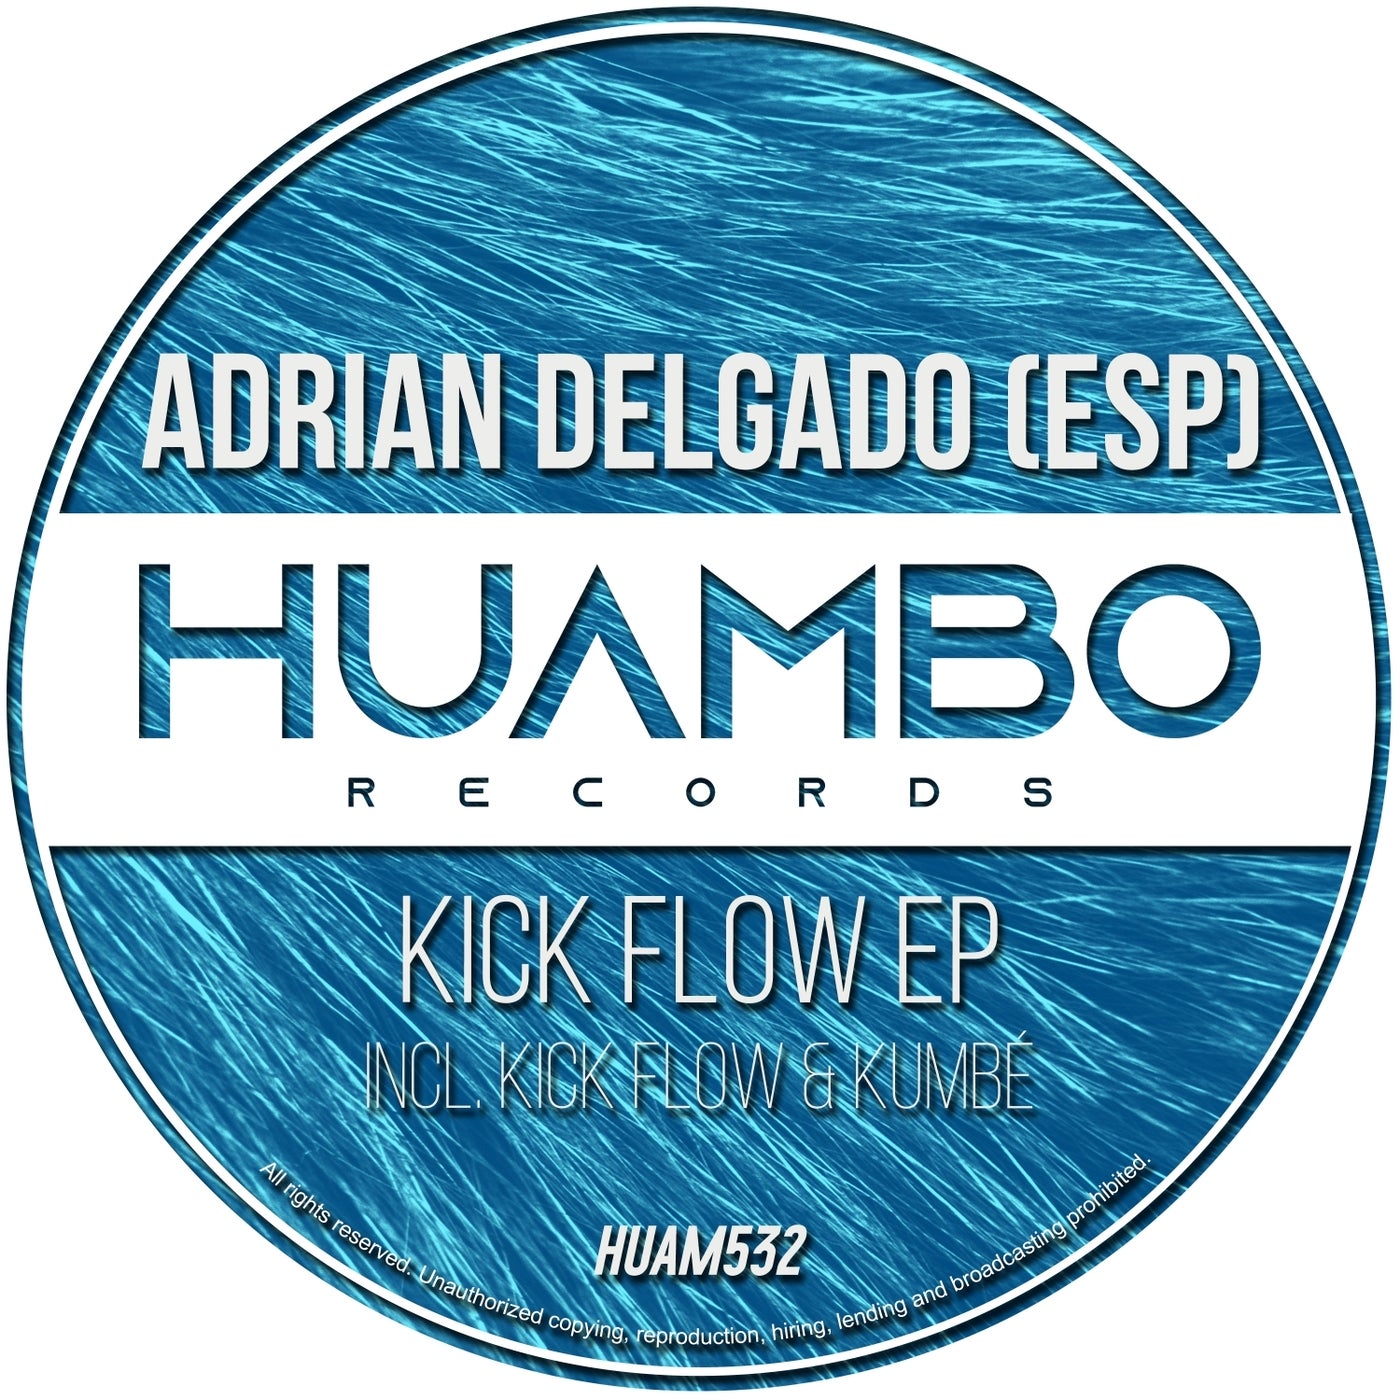 Kick Flow EP